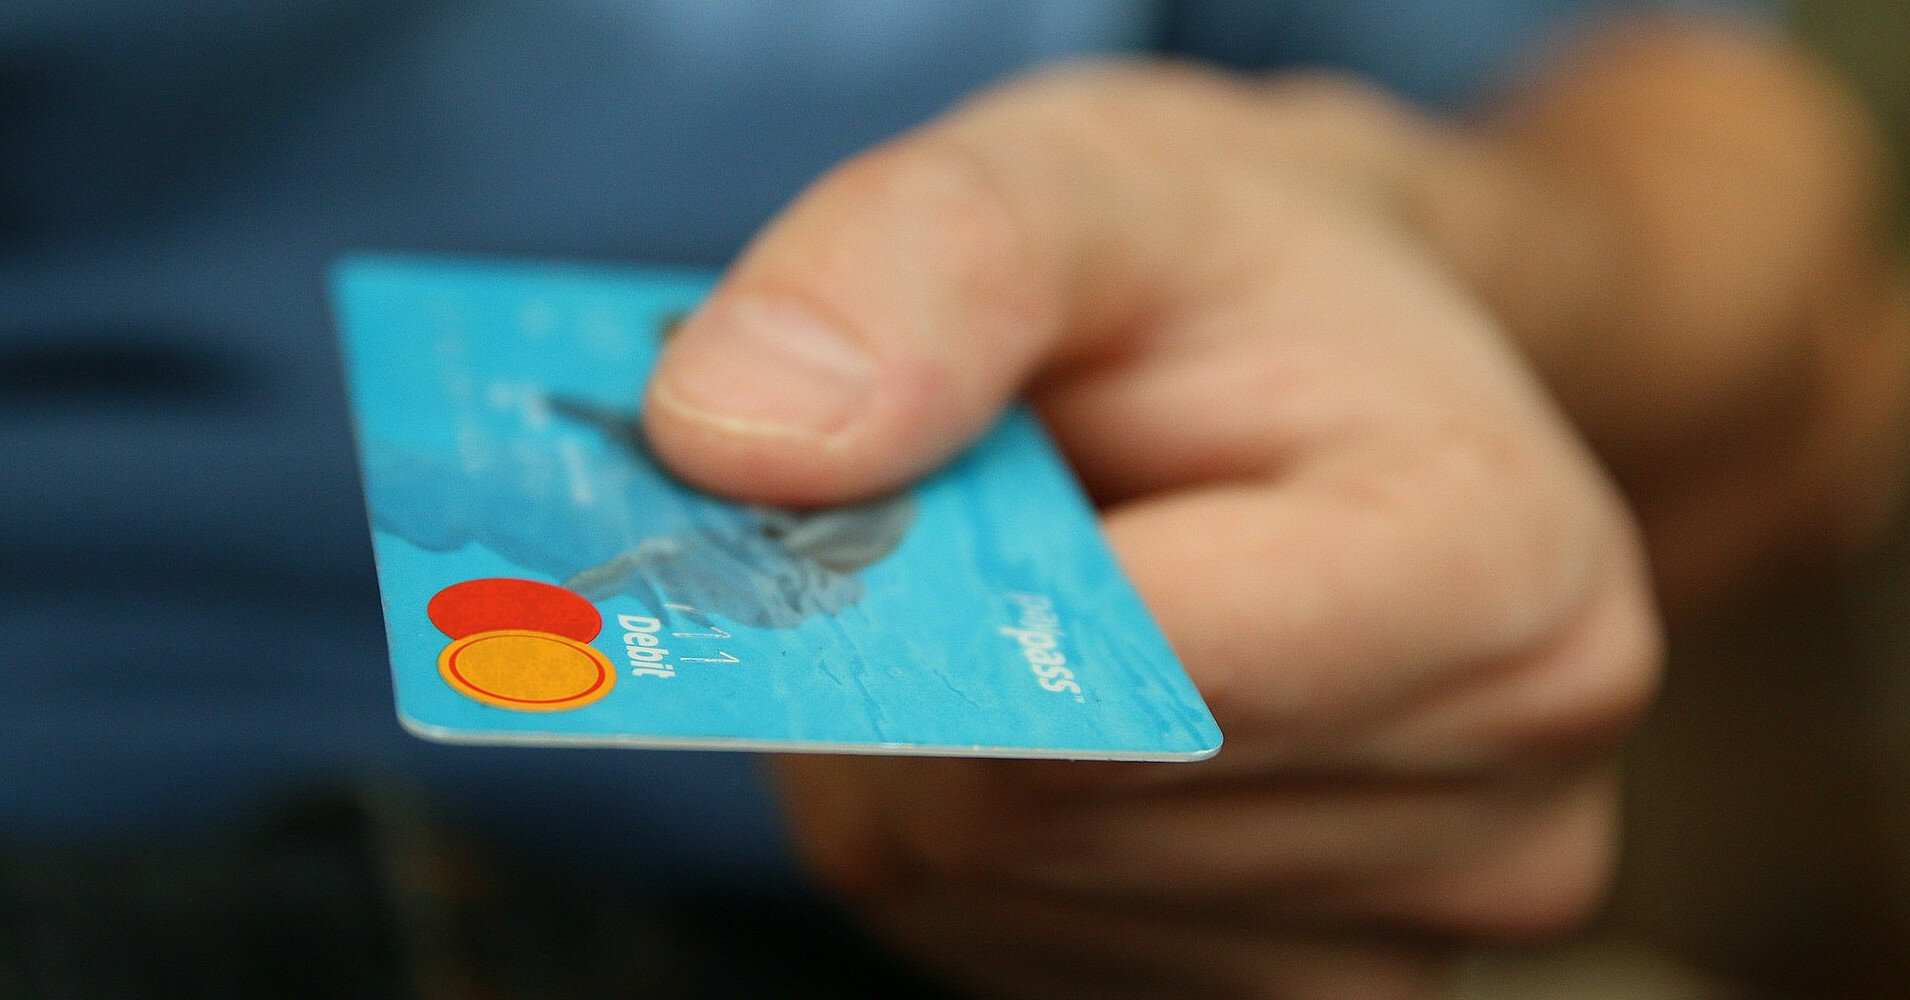 "єПідтримка": 6,5 млн украинцев получили банковские карты